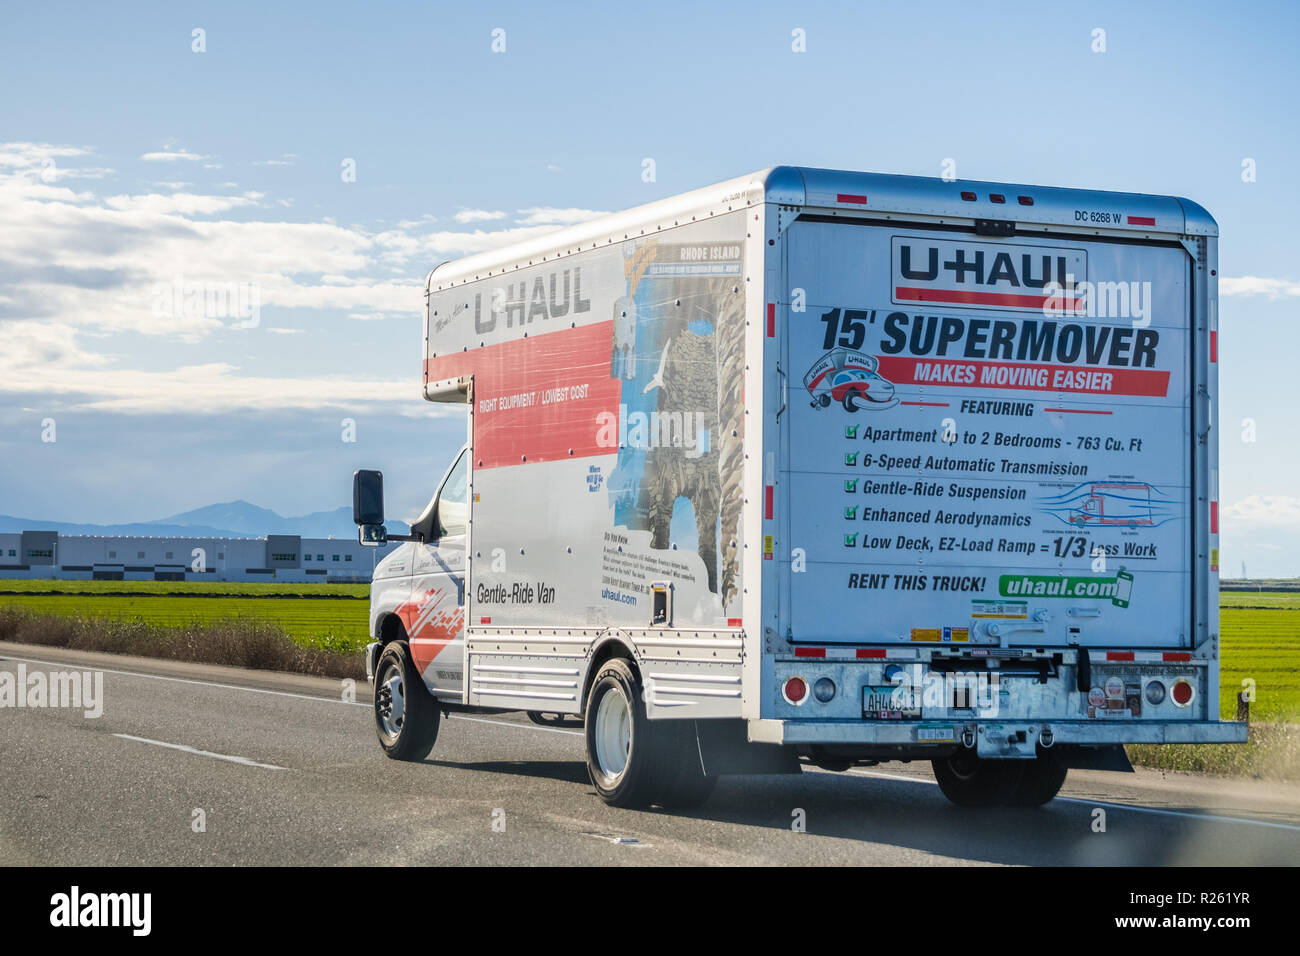 25 mars 2018 Stockton / CA / USA - U-Haul van voyageant sur l'autoroute ; U-Haul est une société américaine proposant des solutions de déménagement bricolage Banque D'Images